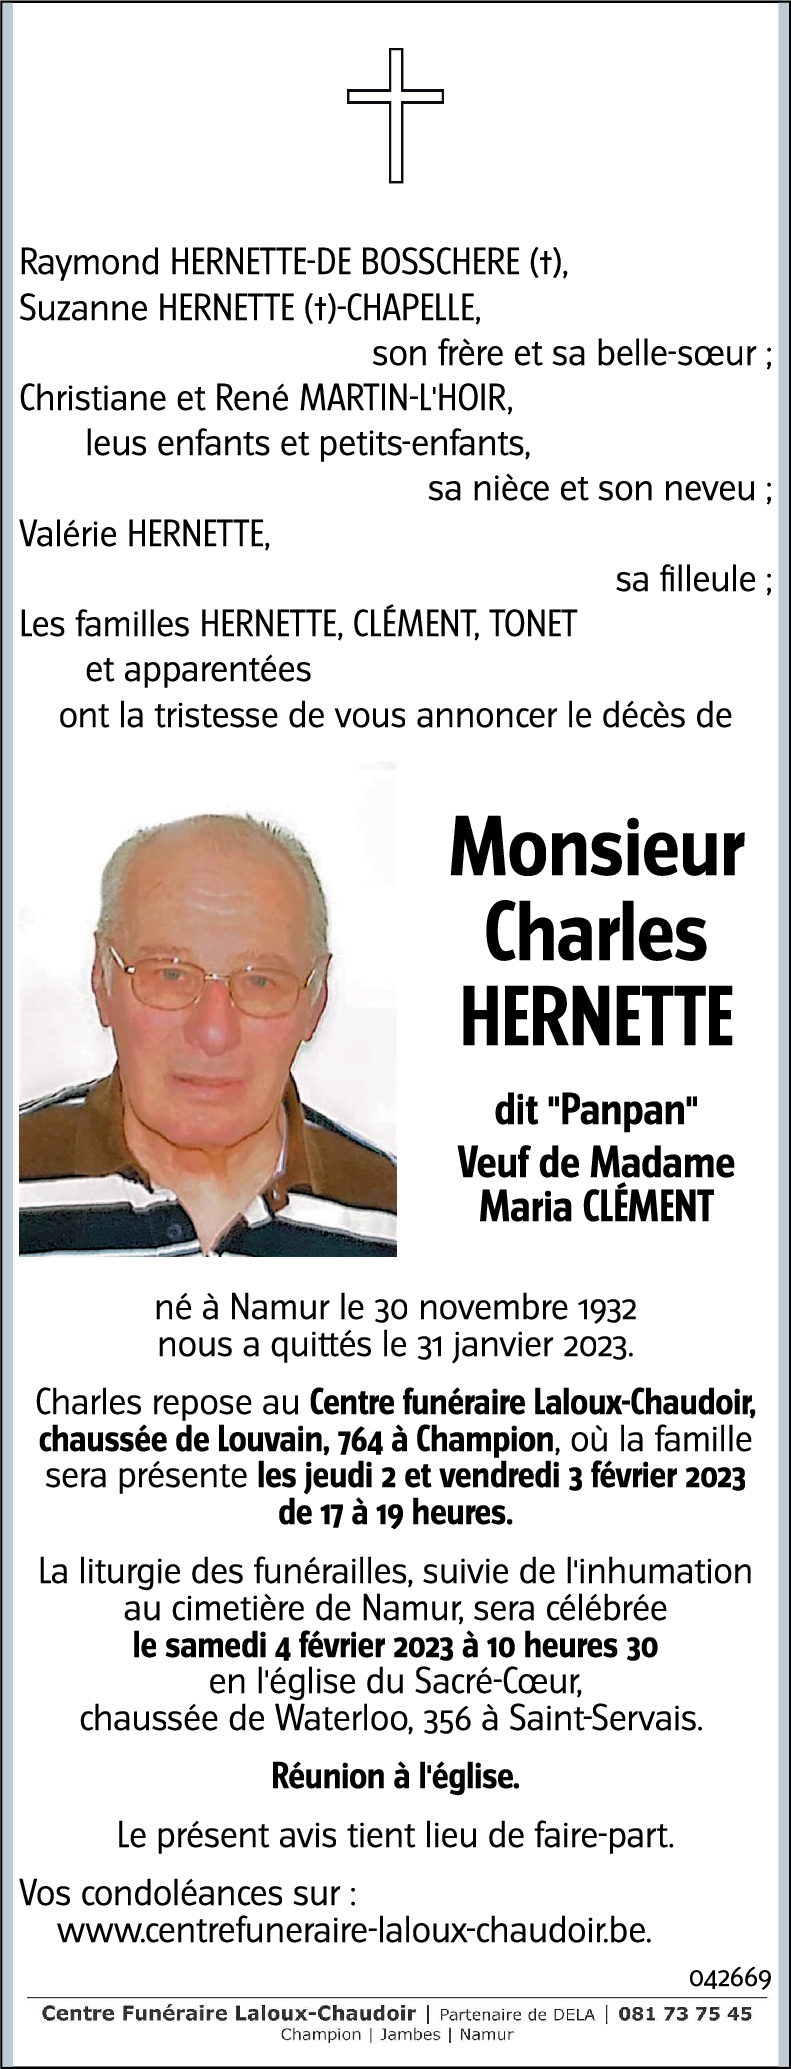 Charles HERNETTE